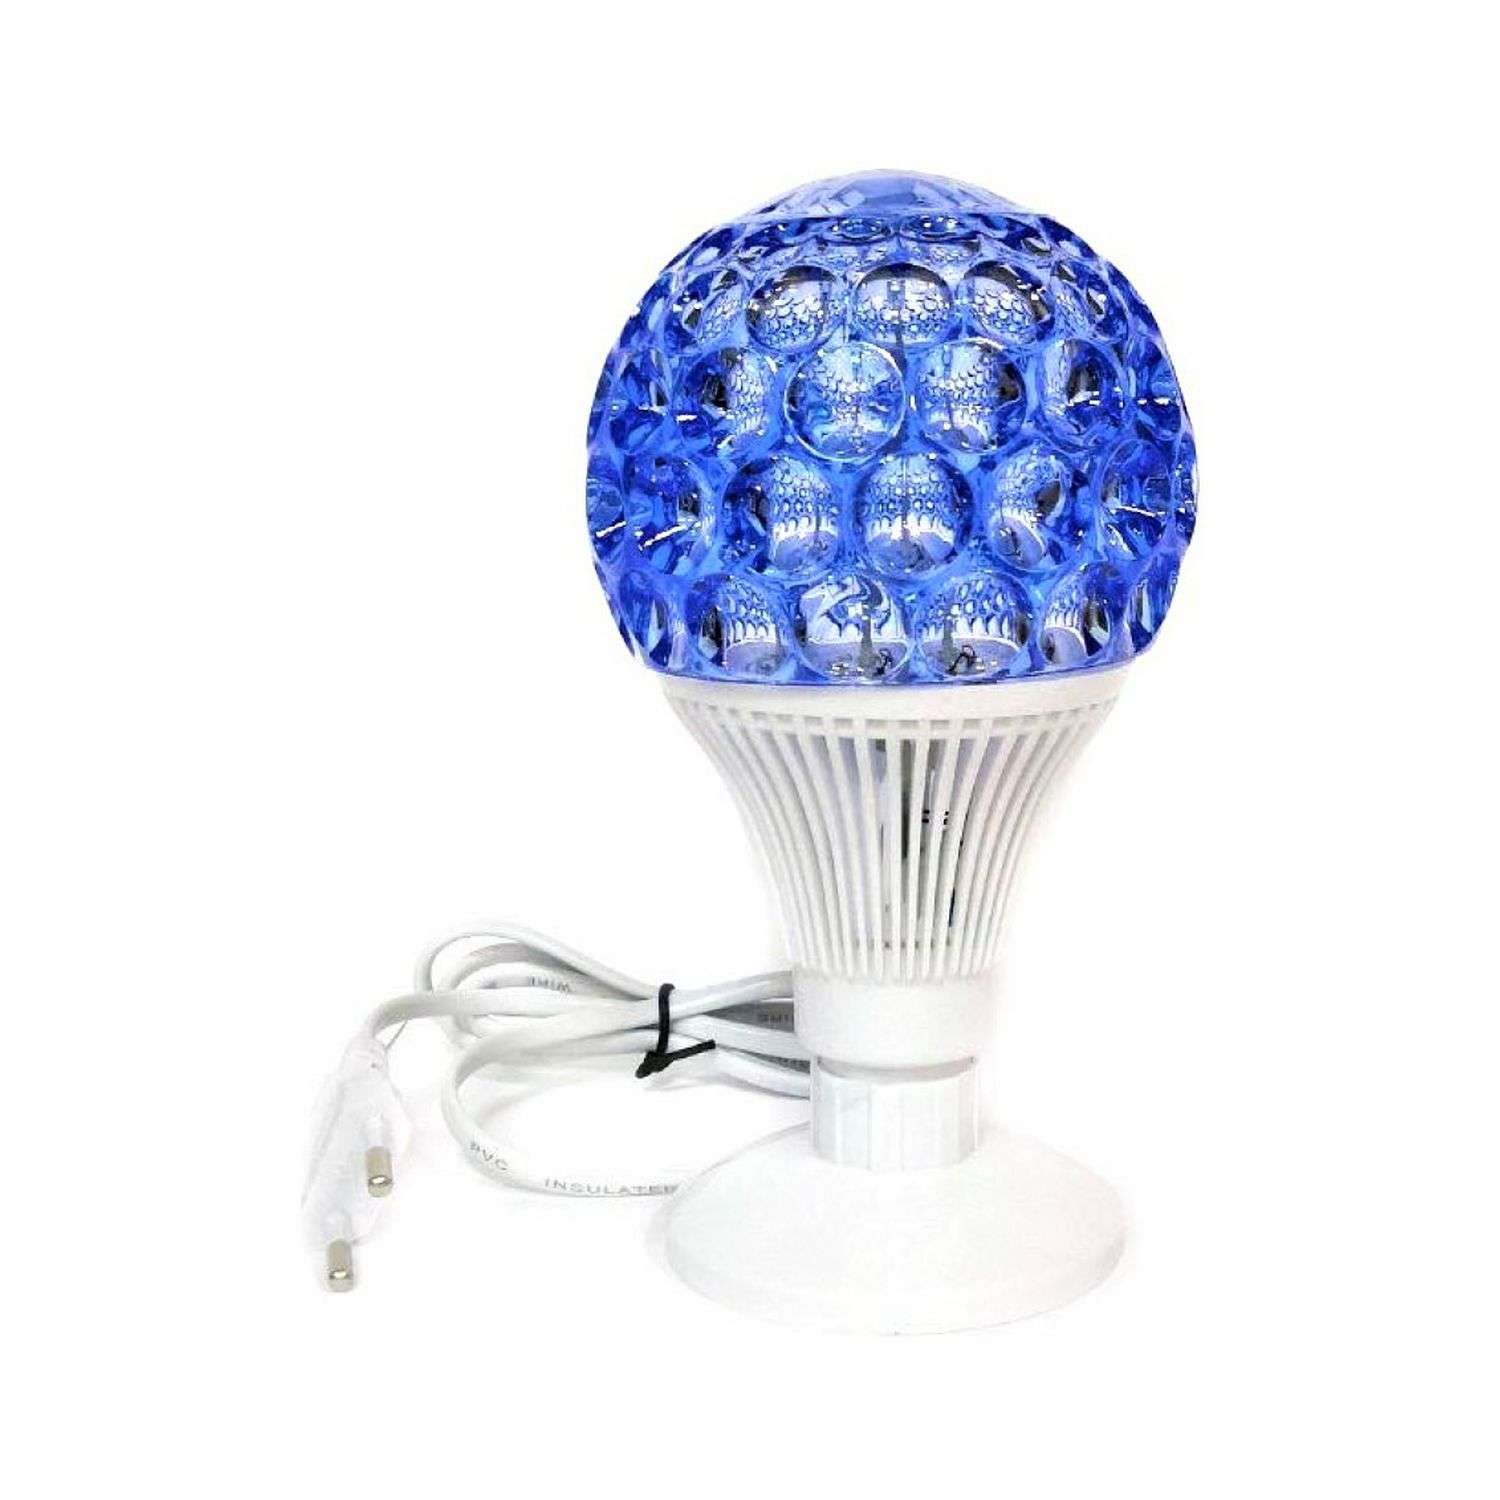 Светильник Uniglodis светящийся шар на подставке синий - фото 1